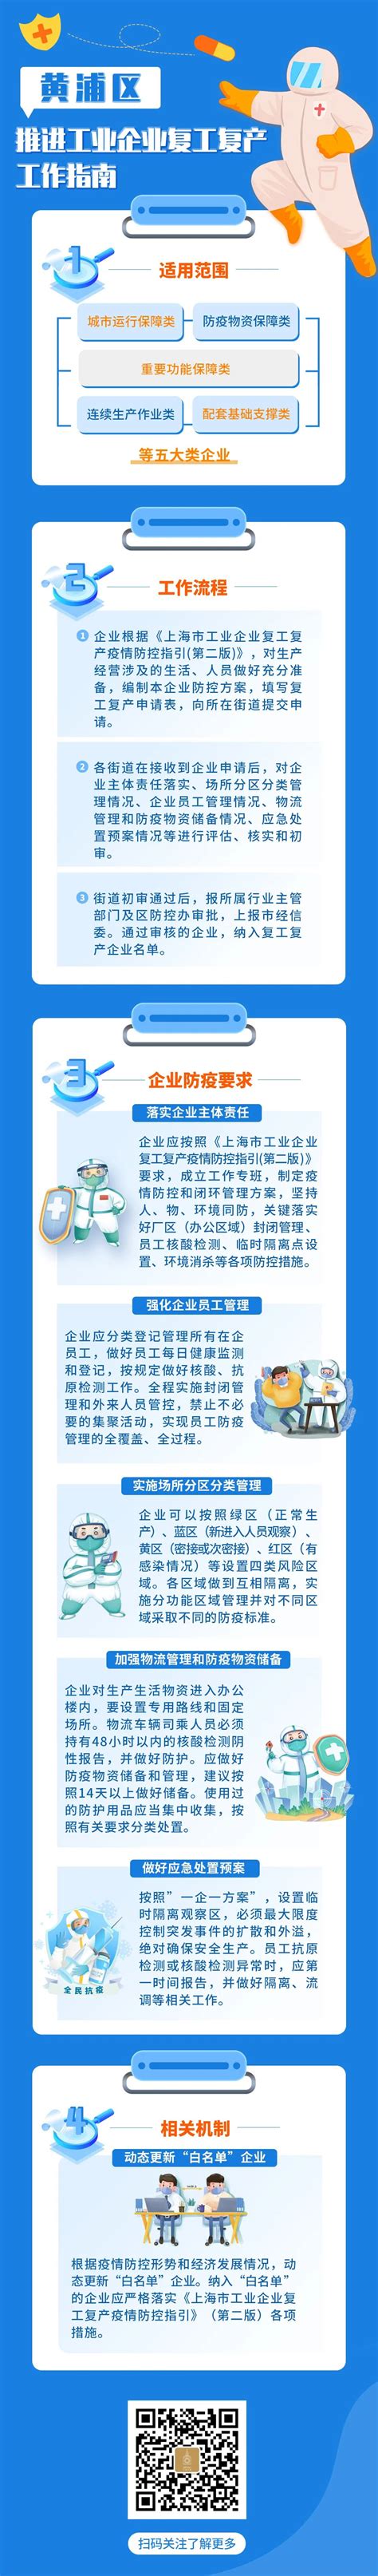 黄浦区科创板 高新技术「上海新微超凡知识产权供应」 - 水**B2B